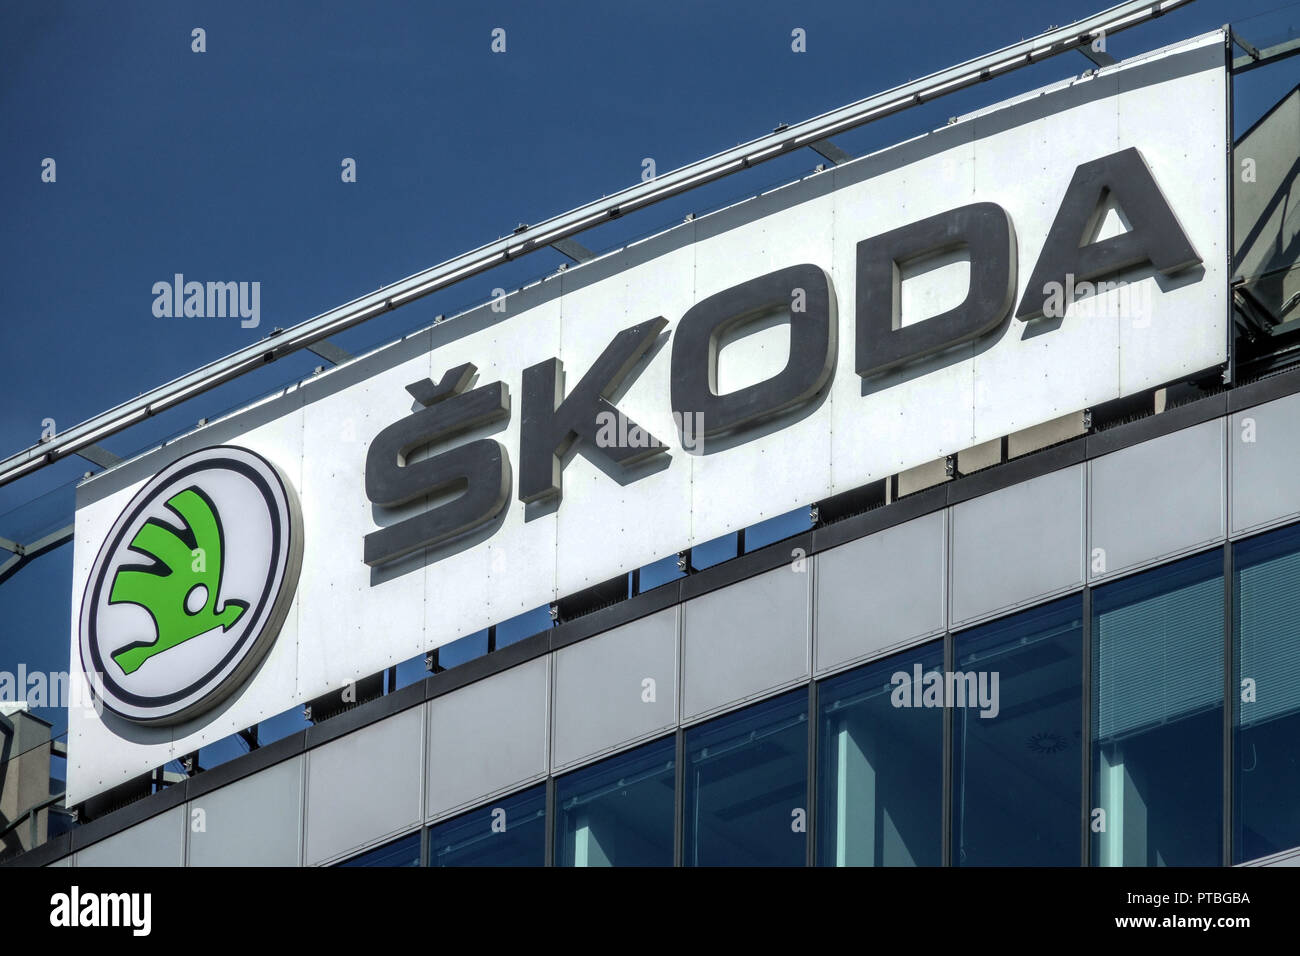 Skoda logo, Skoda advert Czech Republic Stock Photo